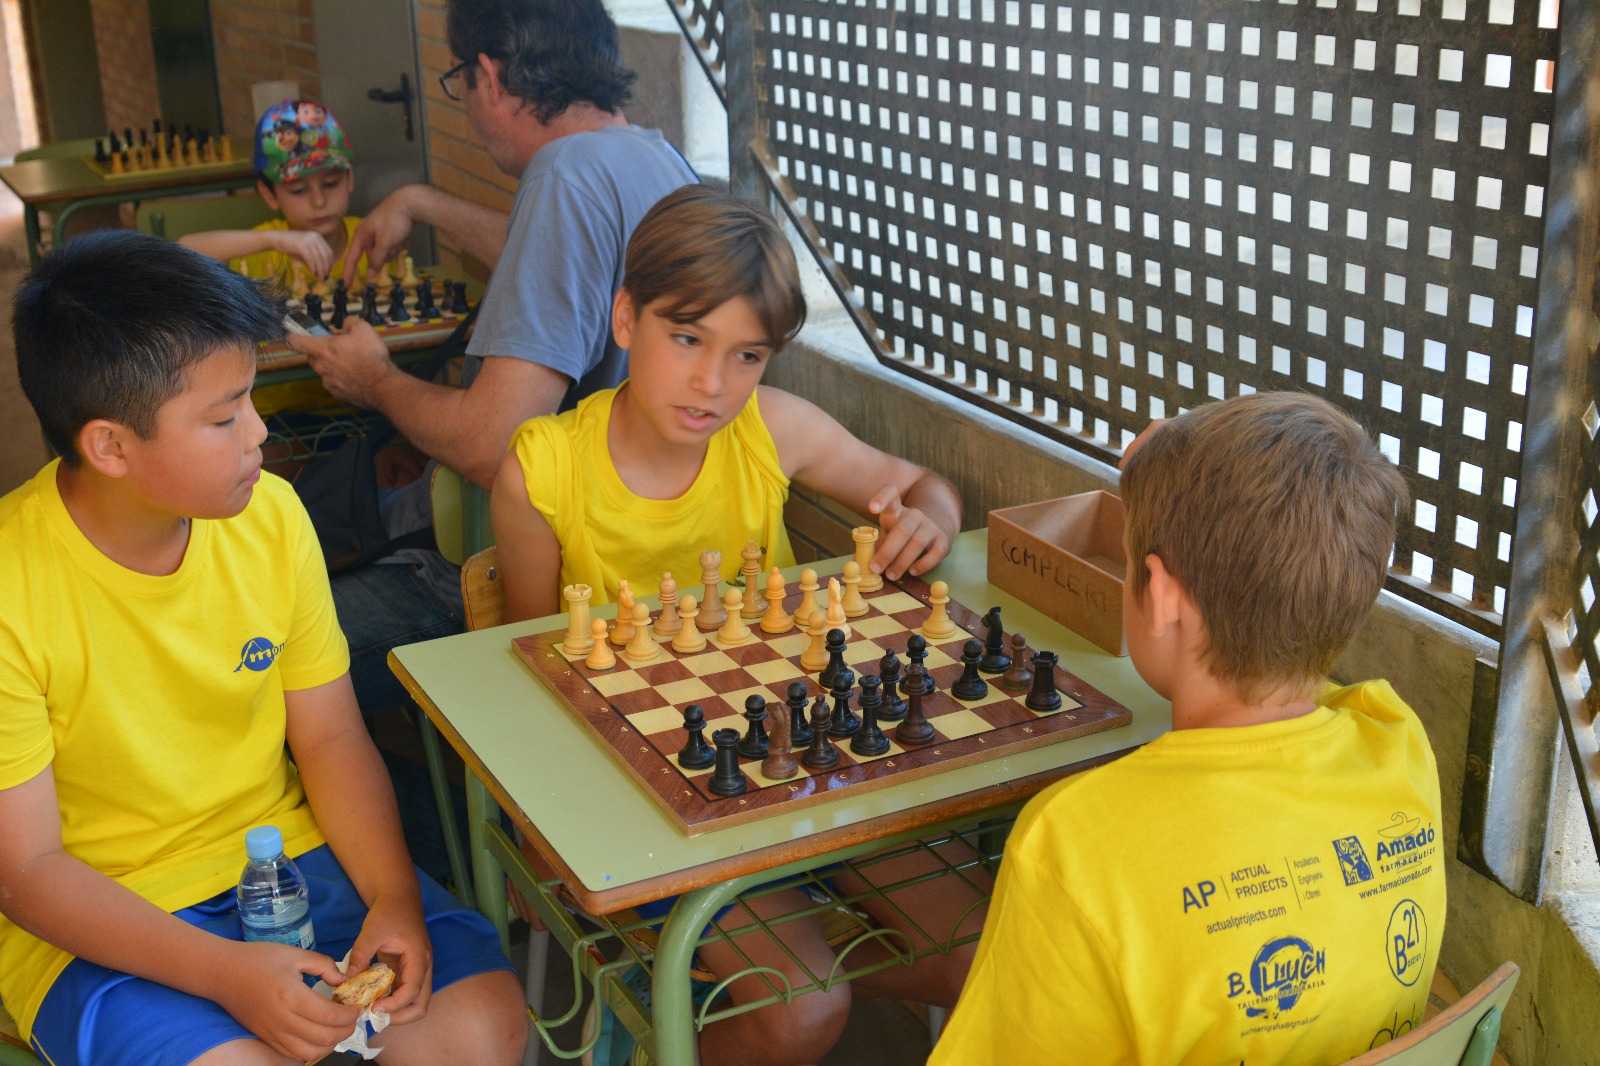 Escacs – Primària